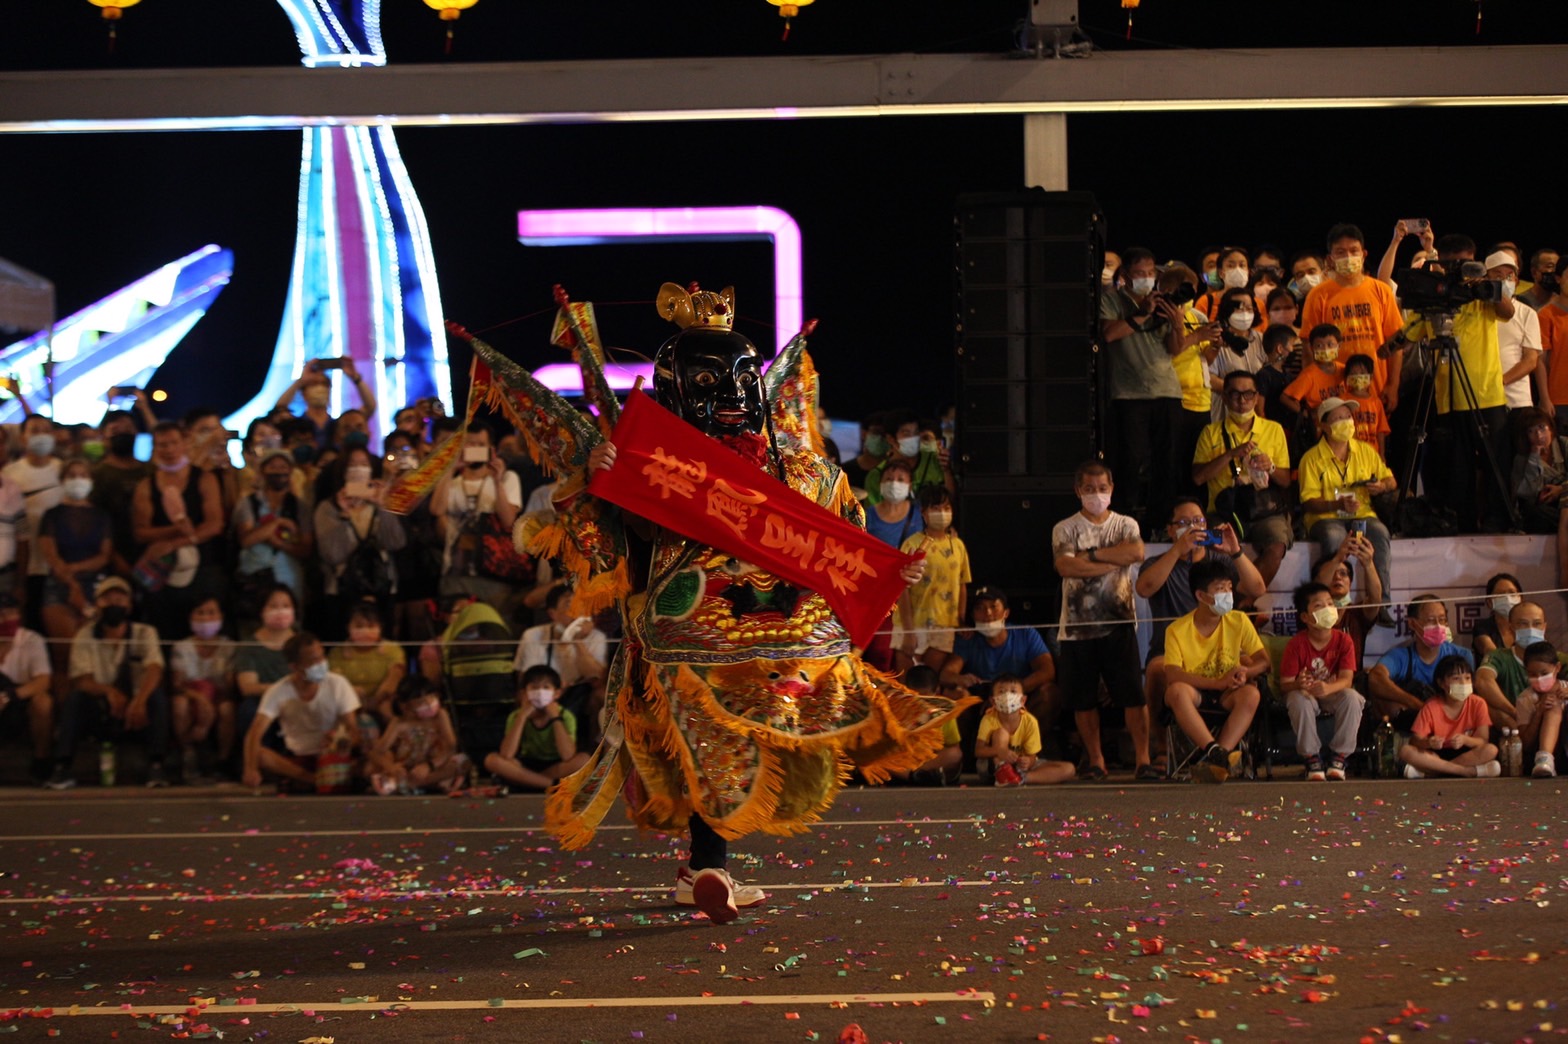 鷄籠中元祭放水燈花車遊行吸引許多市民夾道觀看 (2)